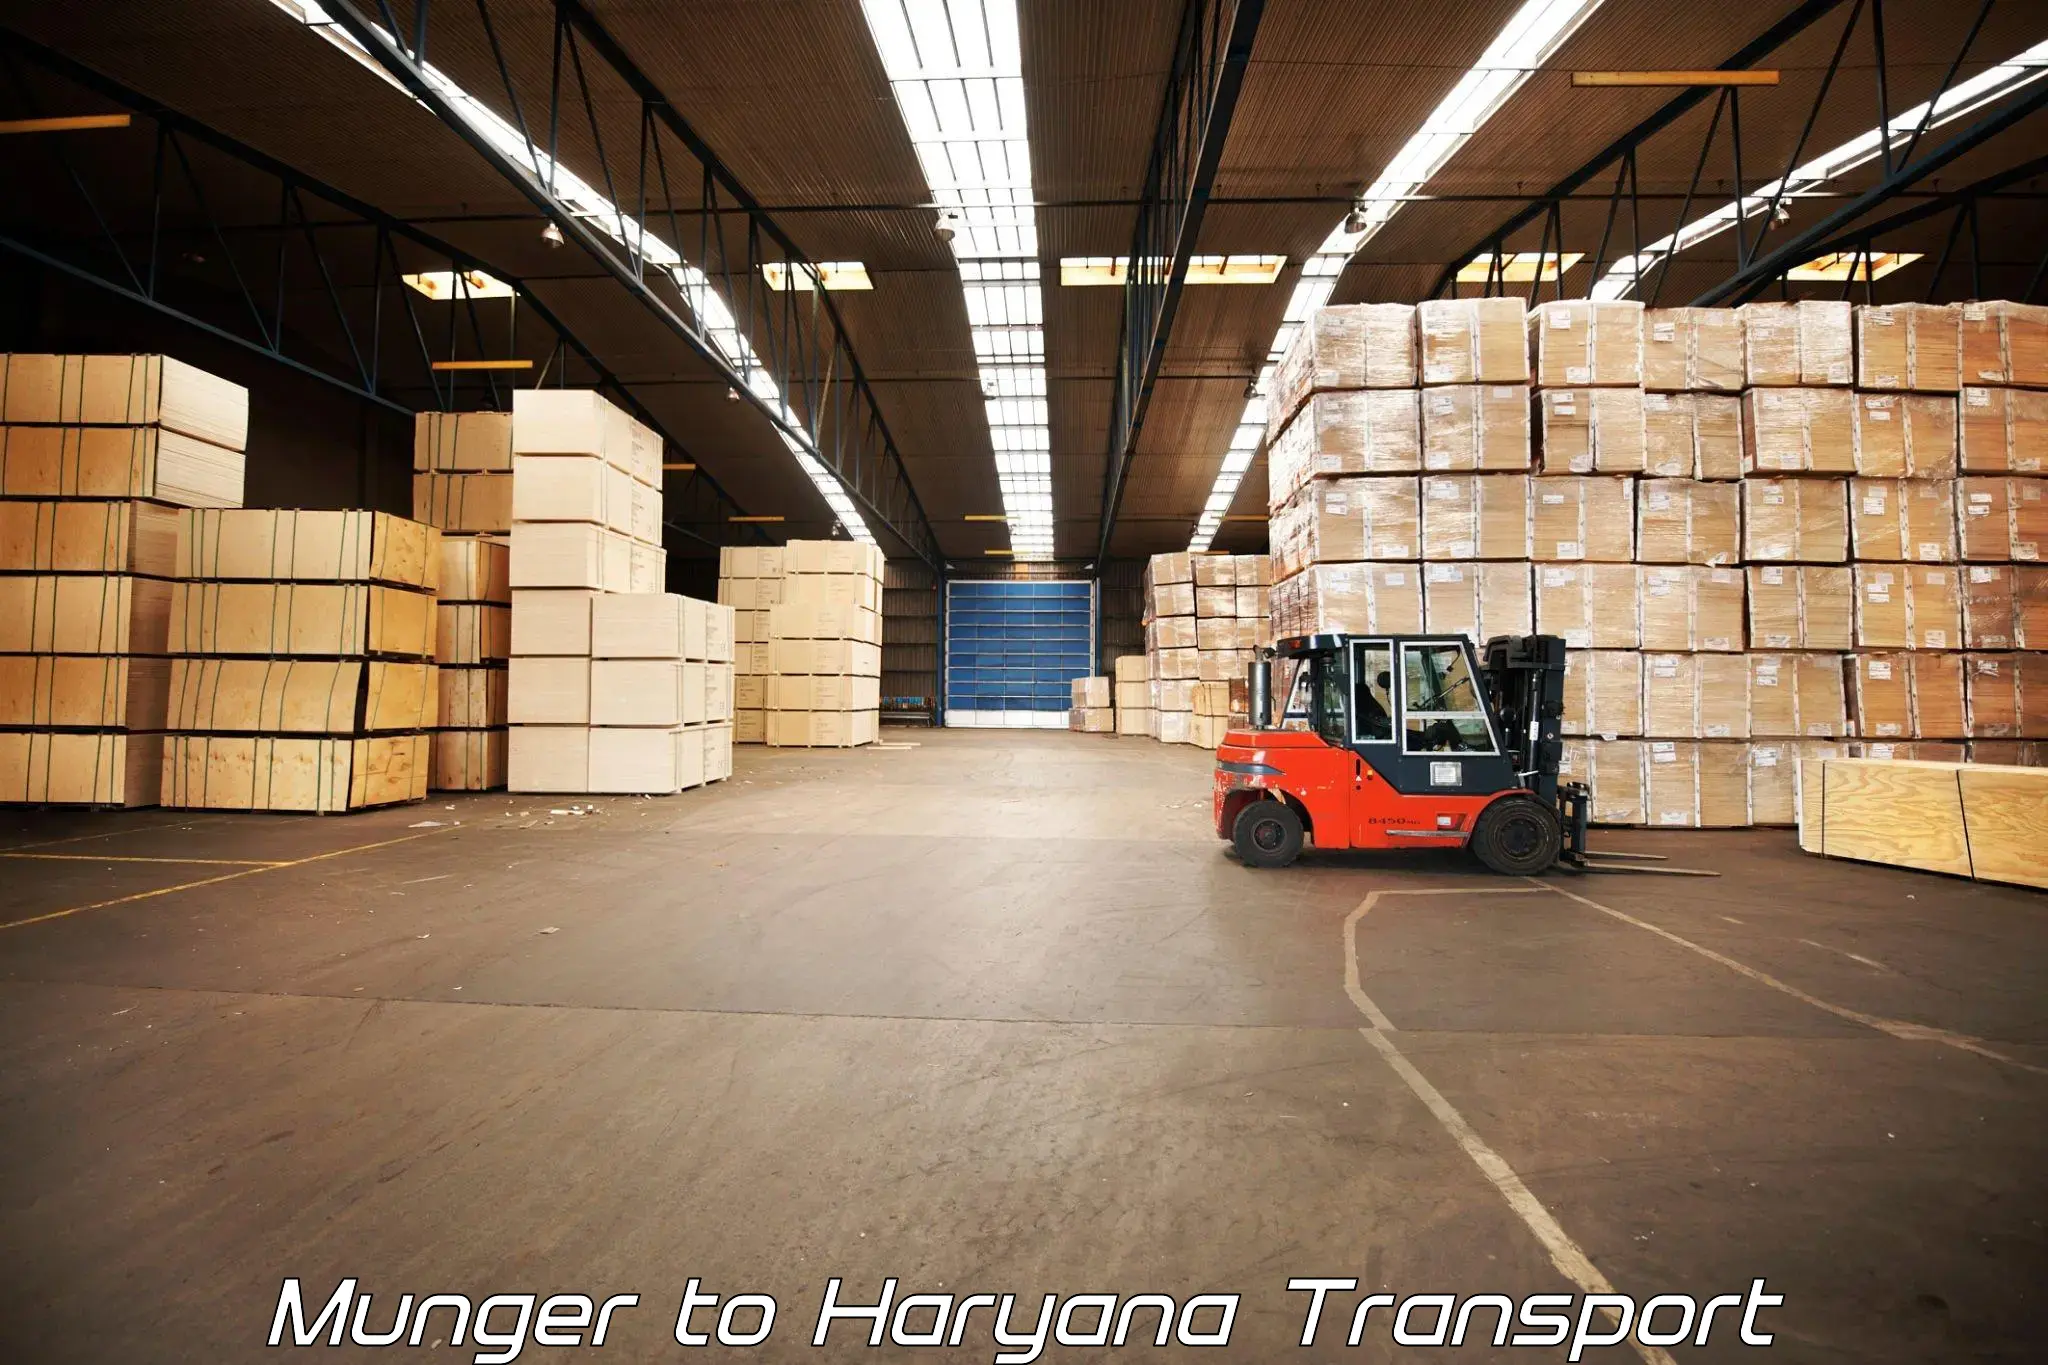 Shipping partner Munger to Odhan